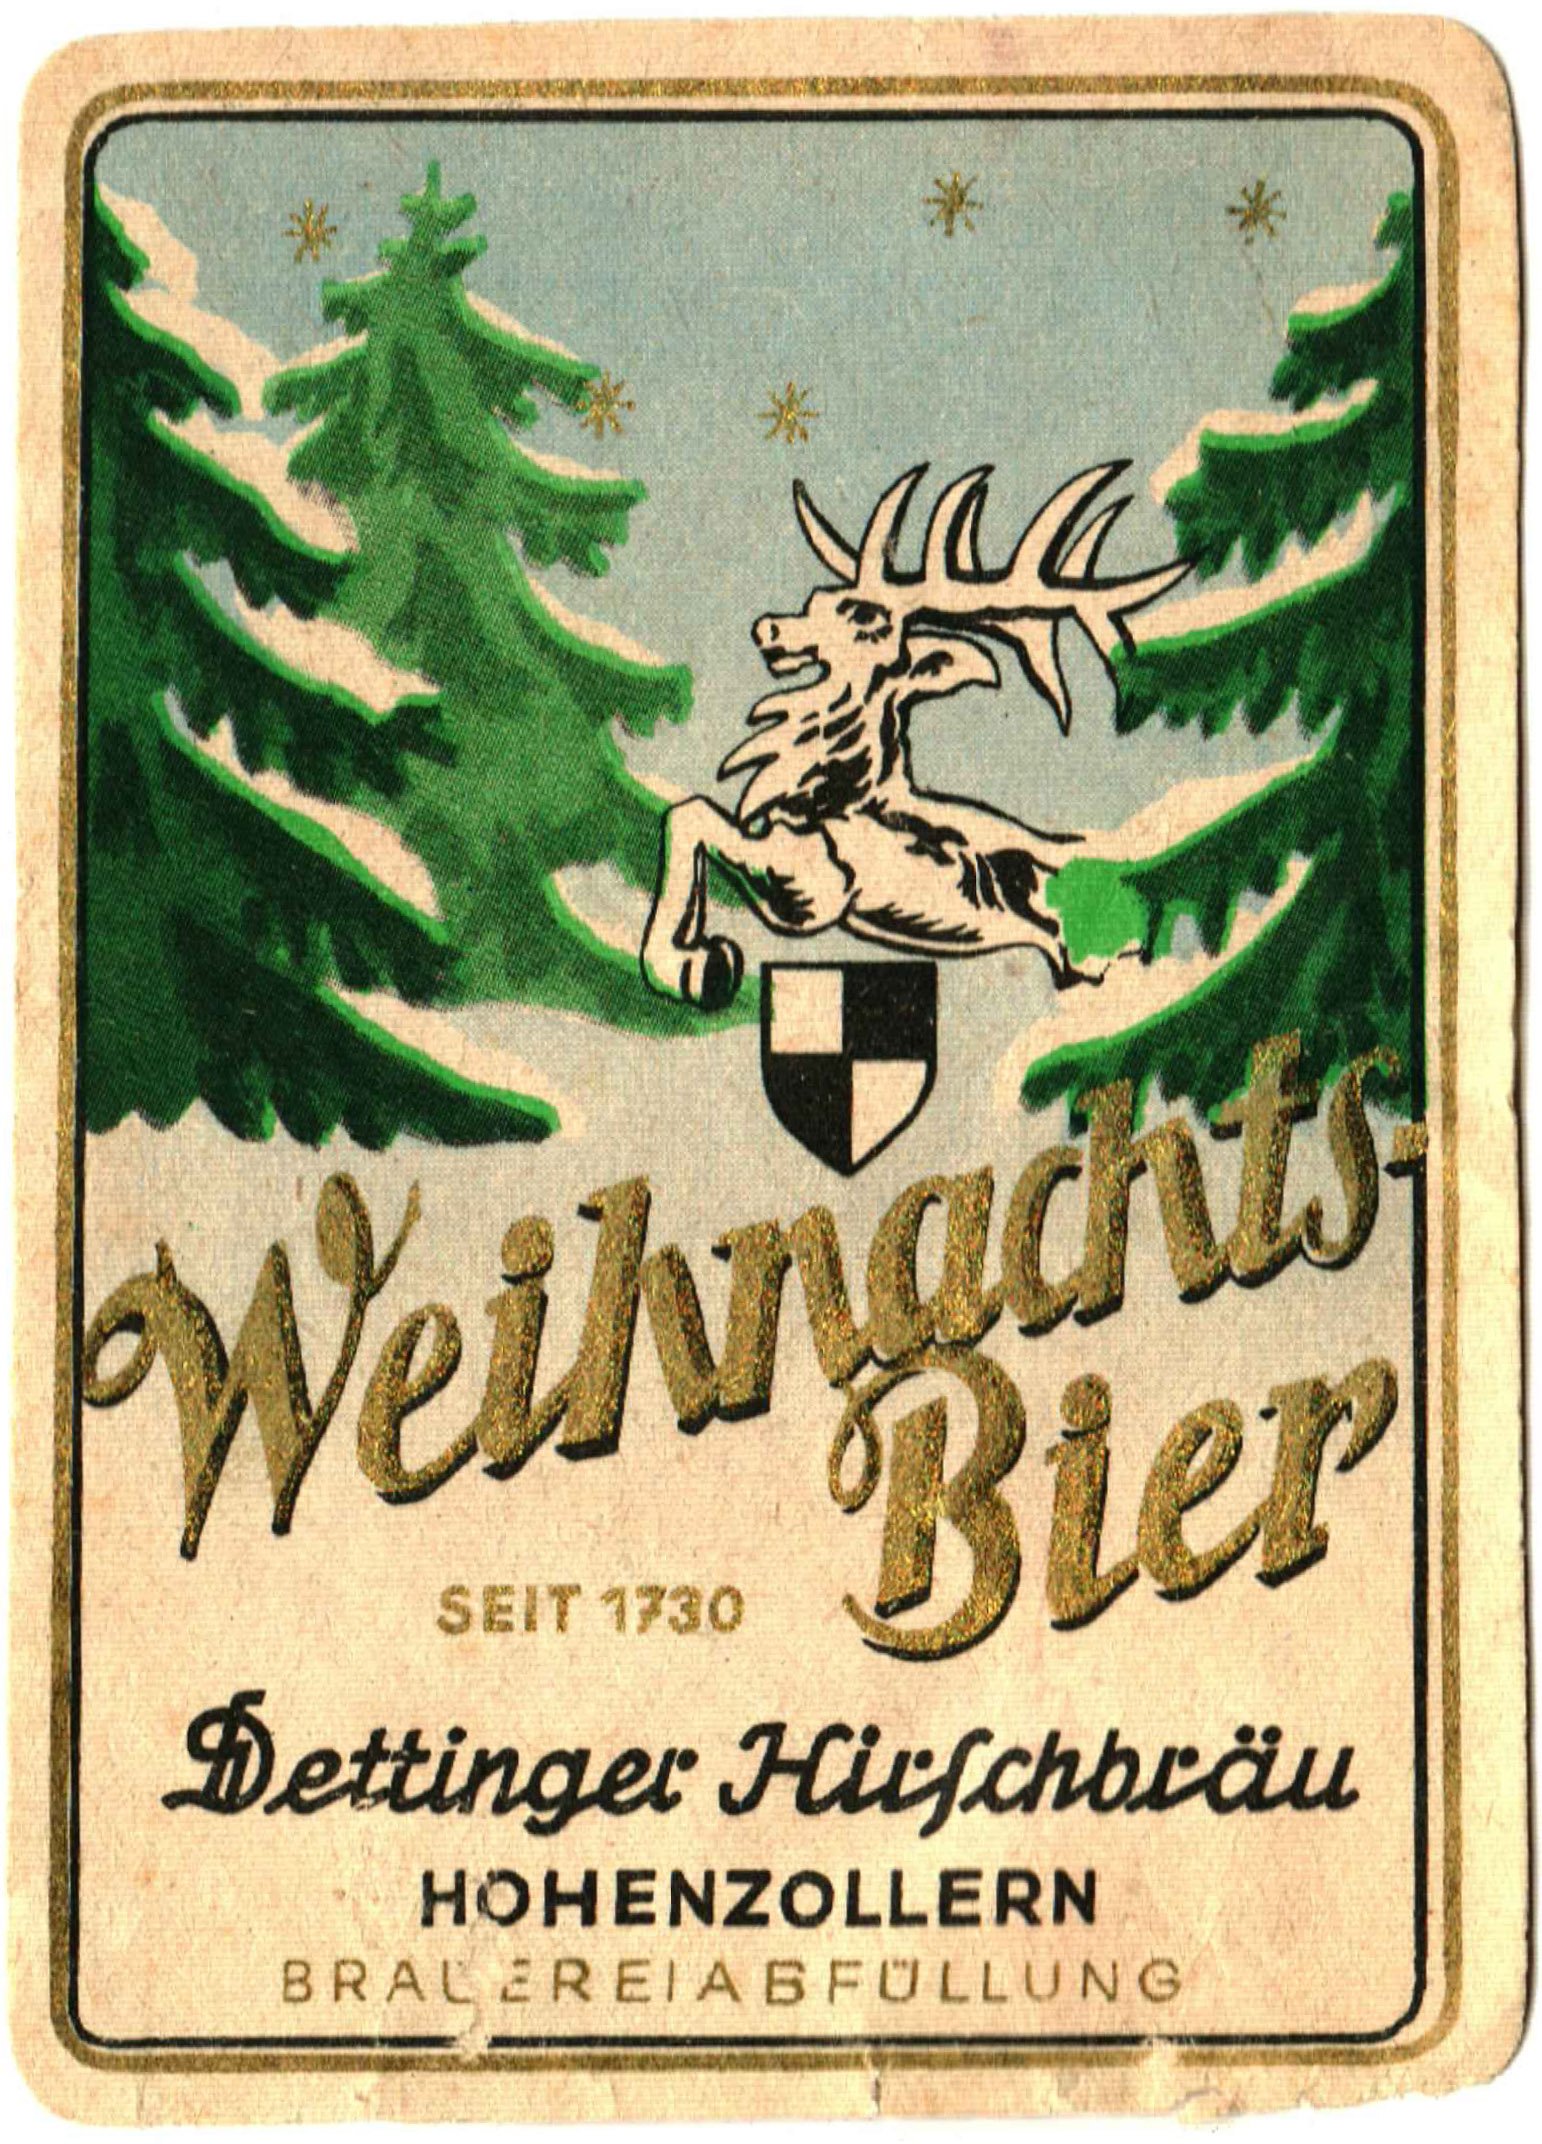 Bieretikett für Weihnachts Bier der Dettinger Hirschbräu, um 1962 (ARCHIV DEUTSCHER BIERETIKETTEN CC BY-NC-SA)